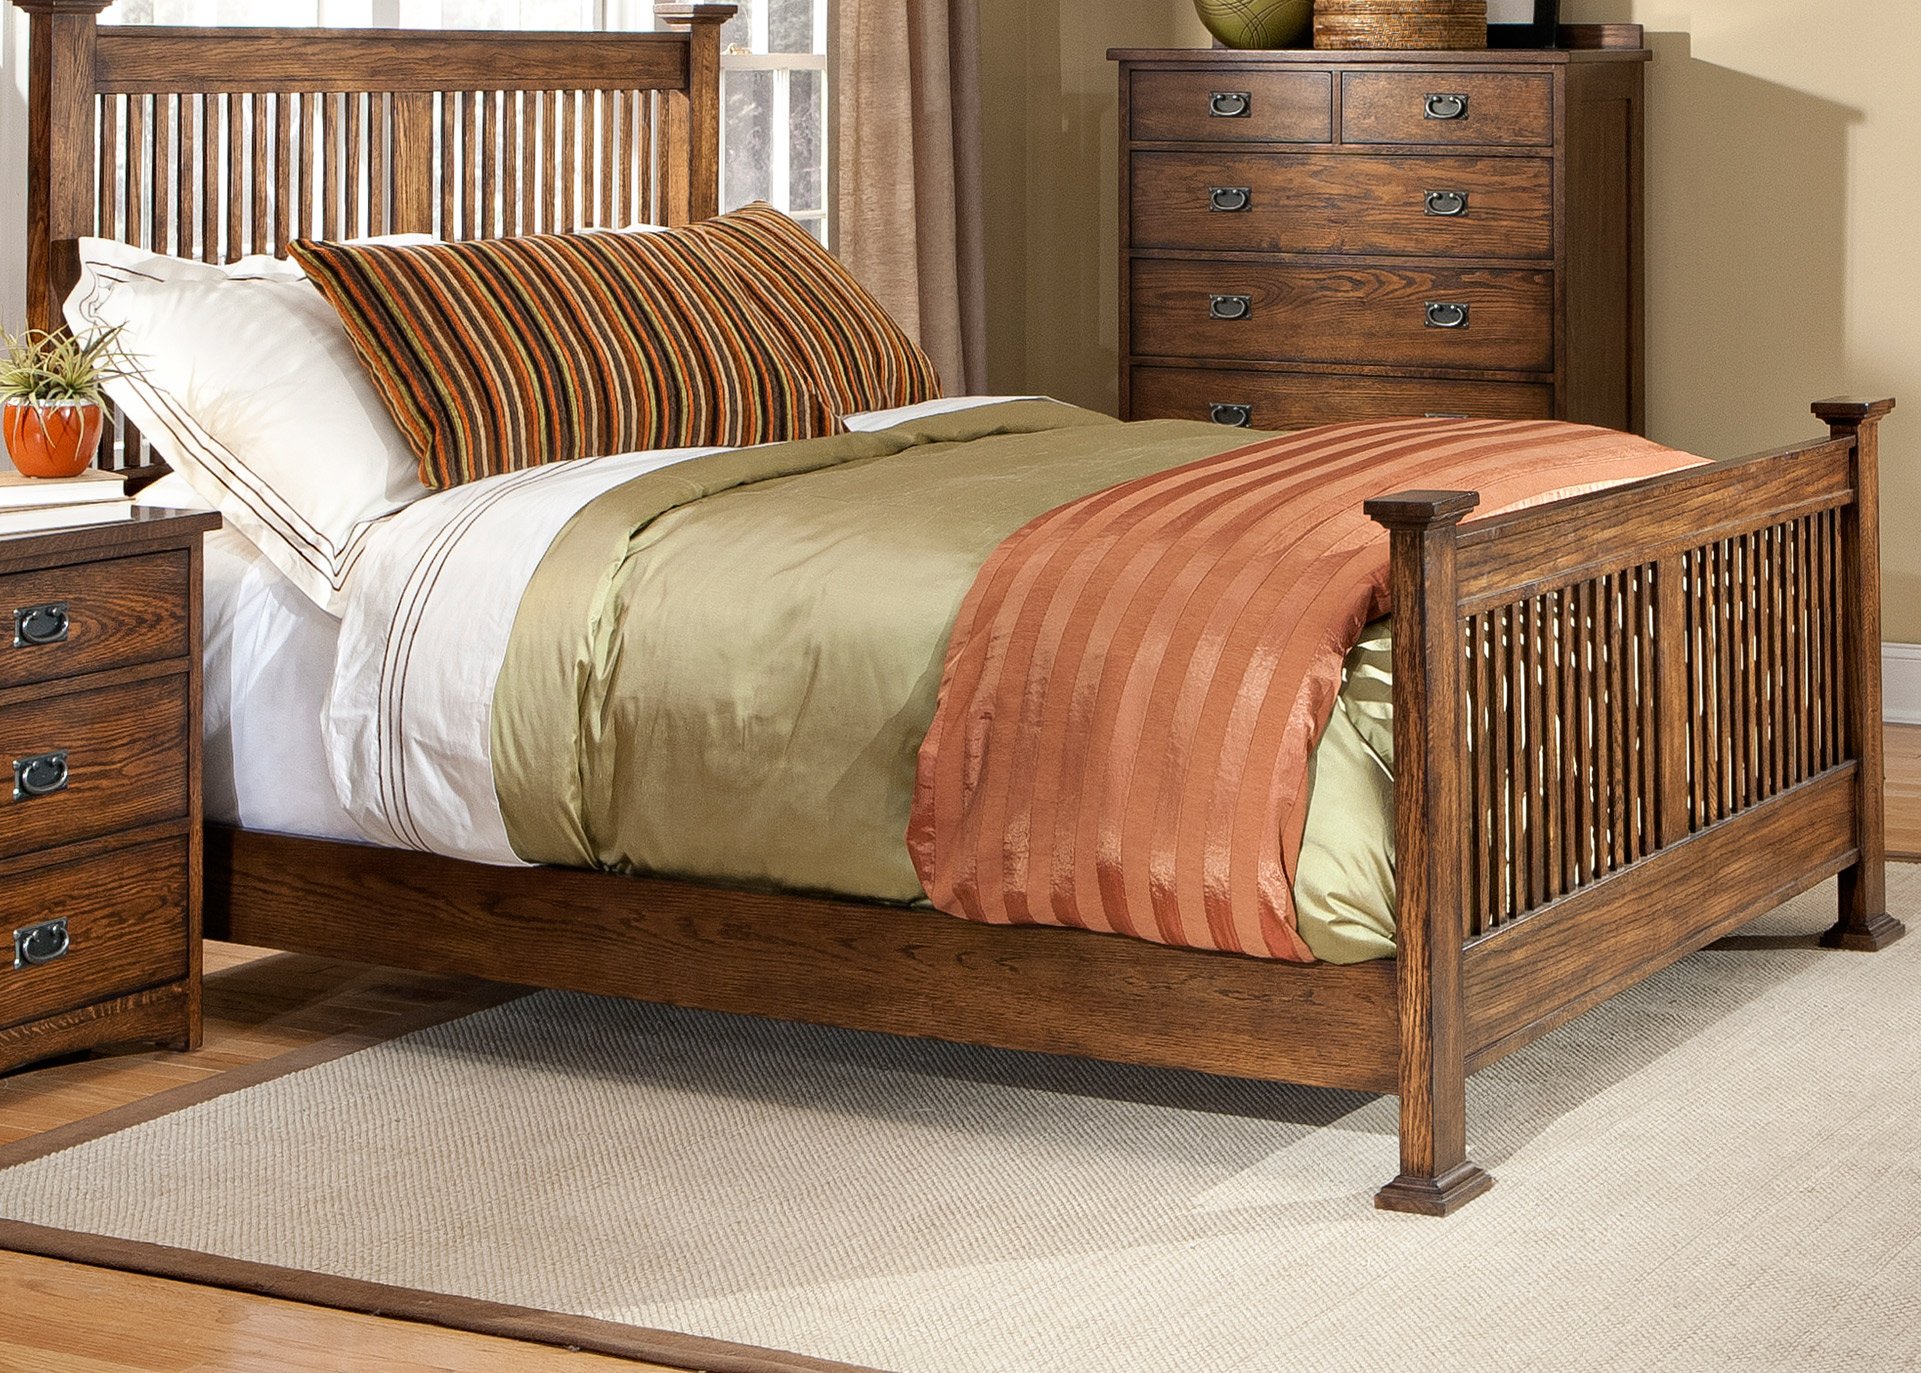 mission oak bedroom furniture for sale